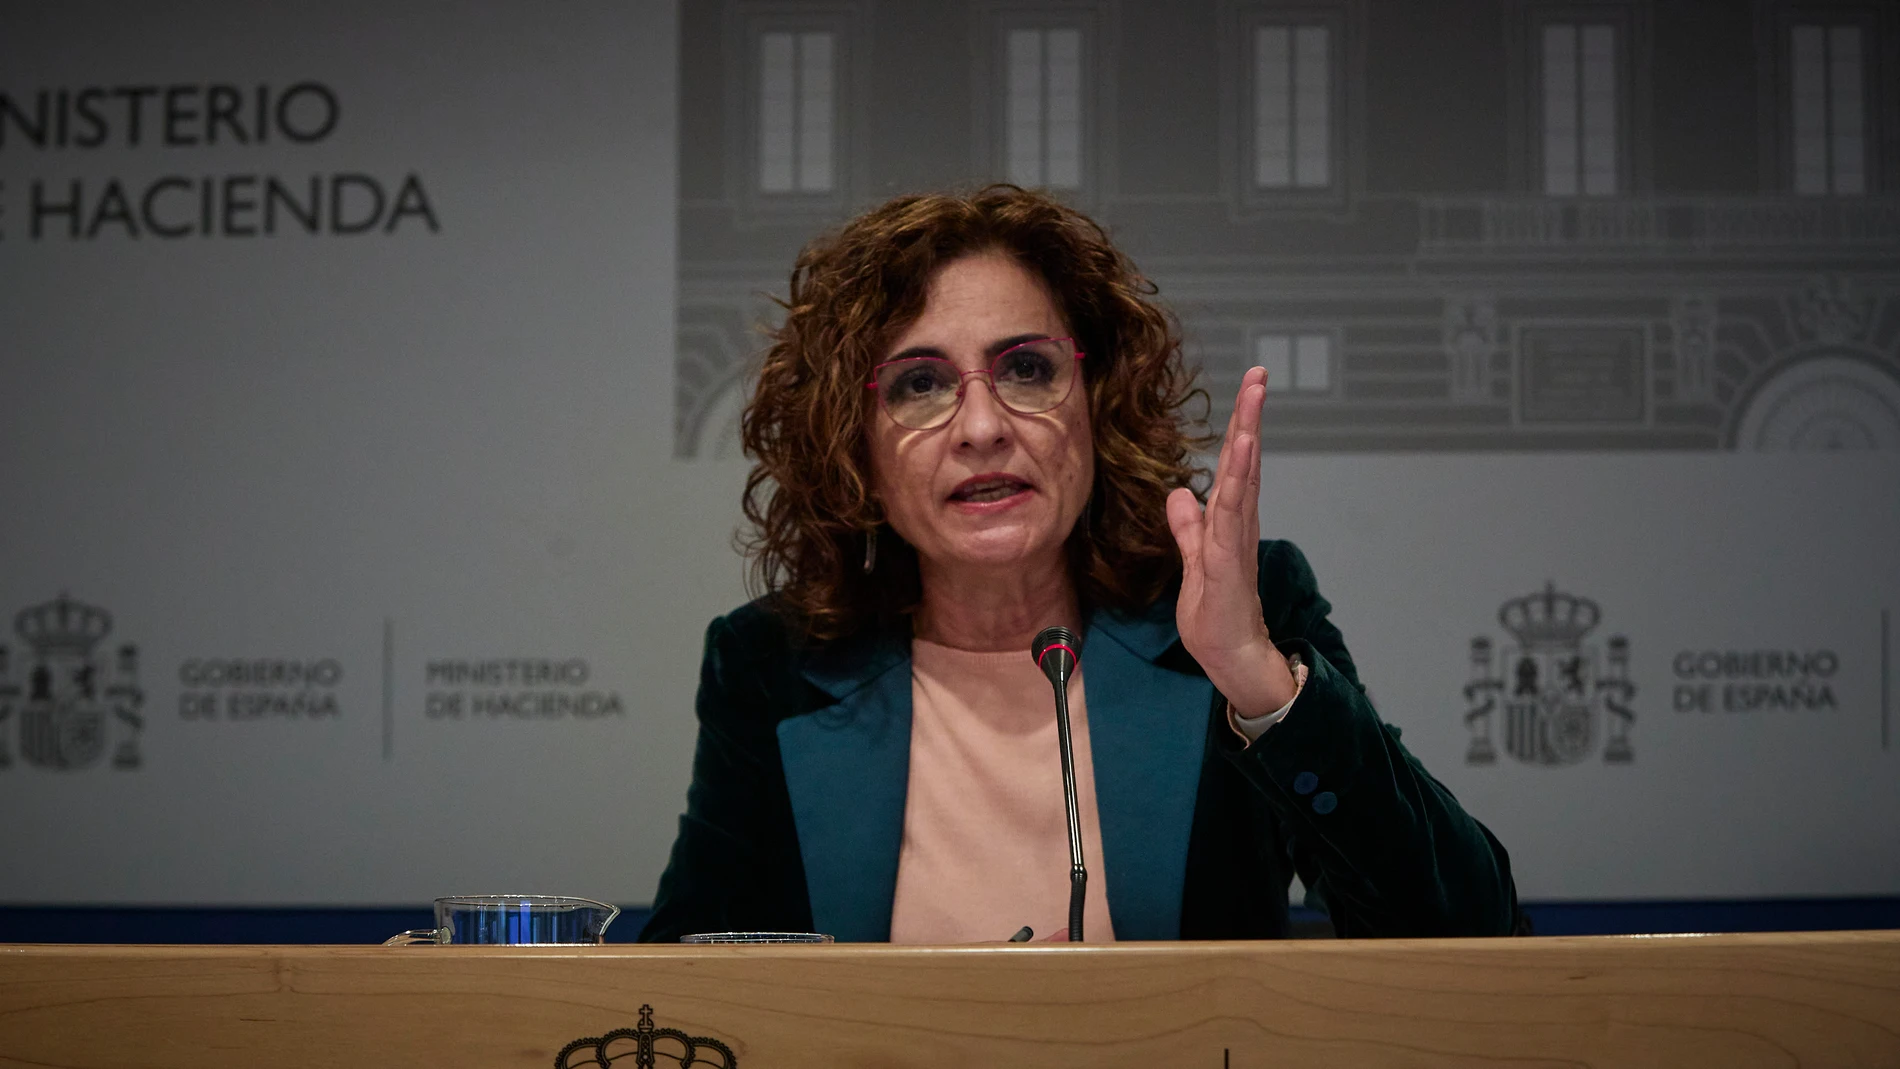 La ministra de Hacienda y portavoz del Gobierno, María Jesús Montero, presenta los componentes sobre fiscalidad, lucha contra el fraude fiscal y eficacia del gasto público incluidos en el Plan de Recuperación